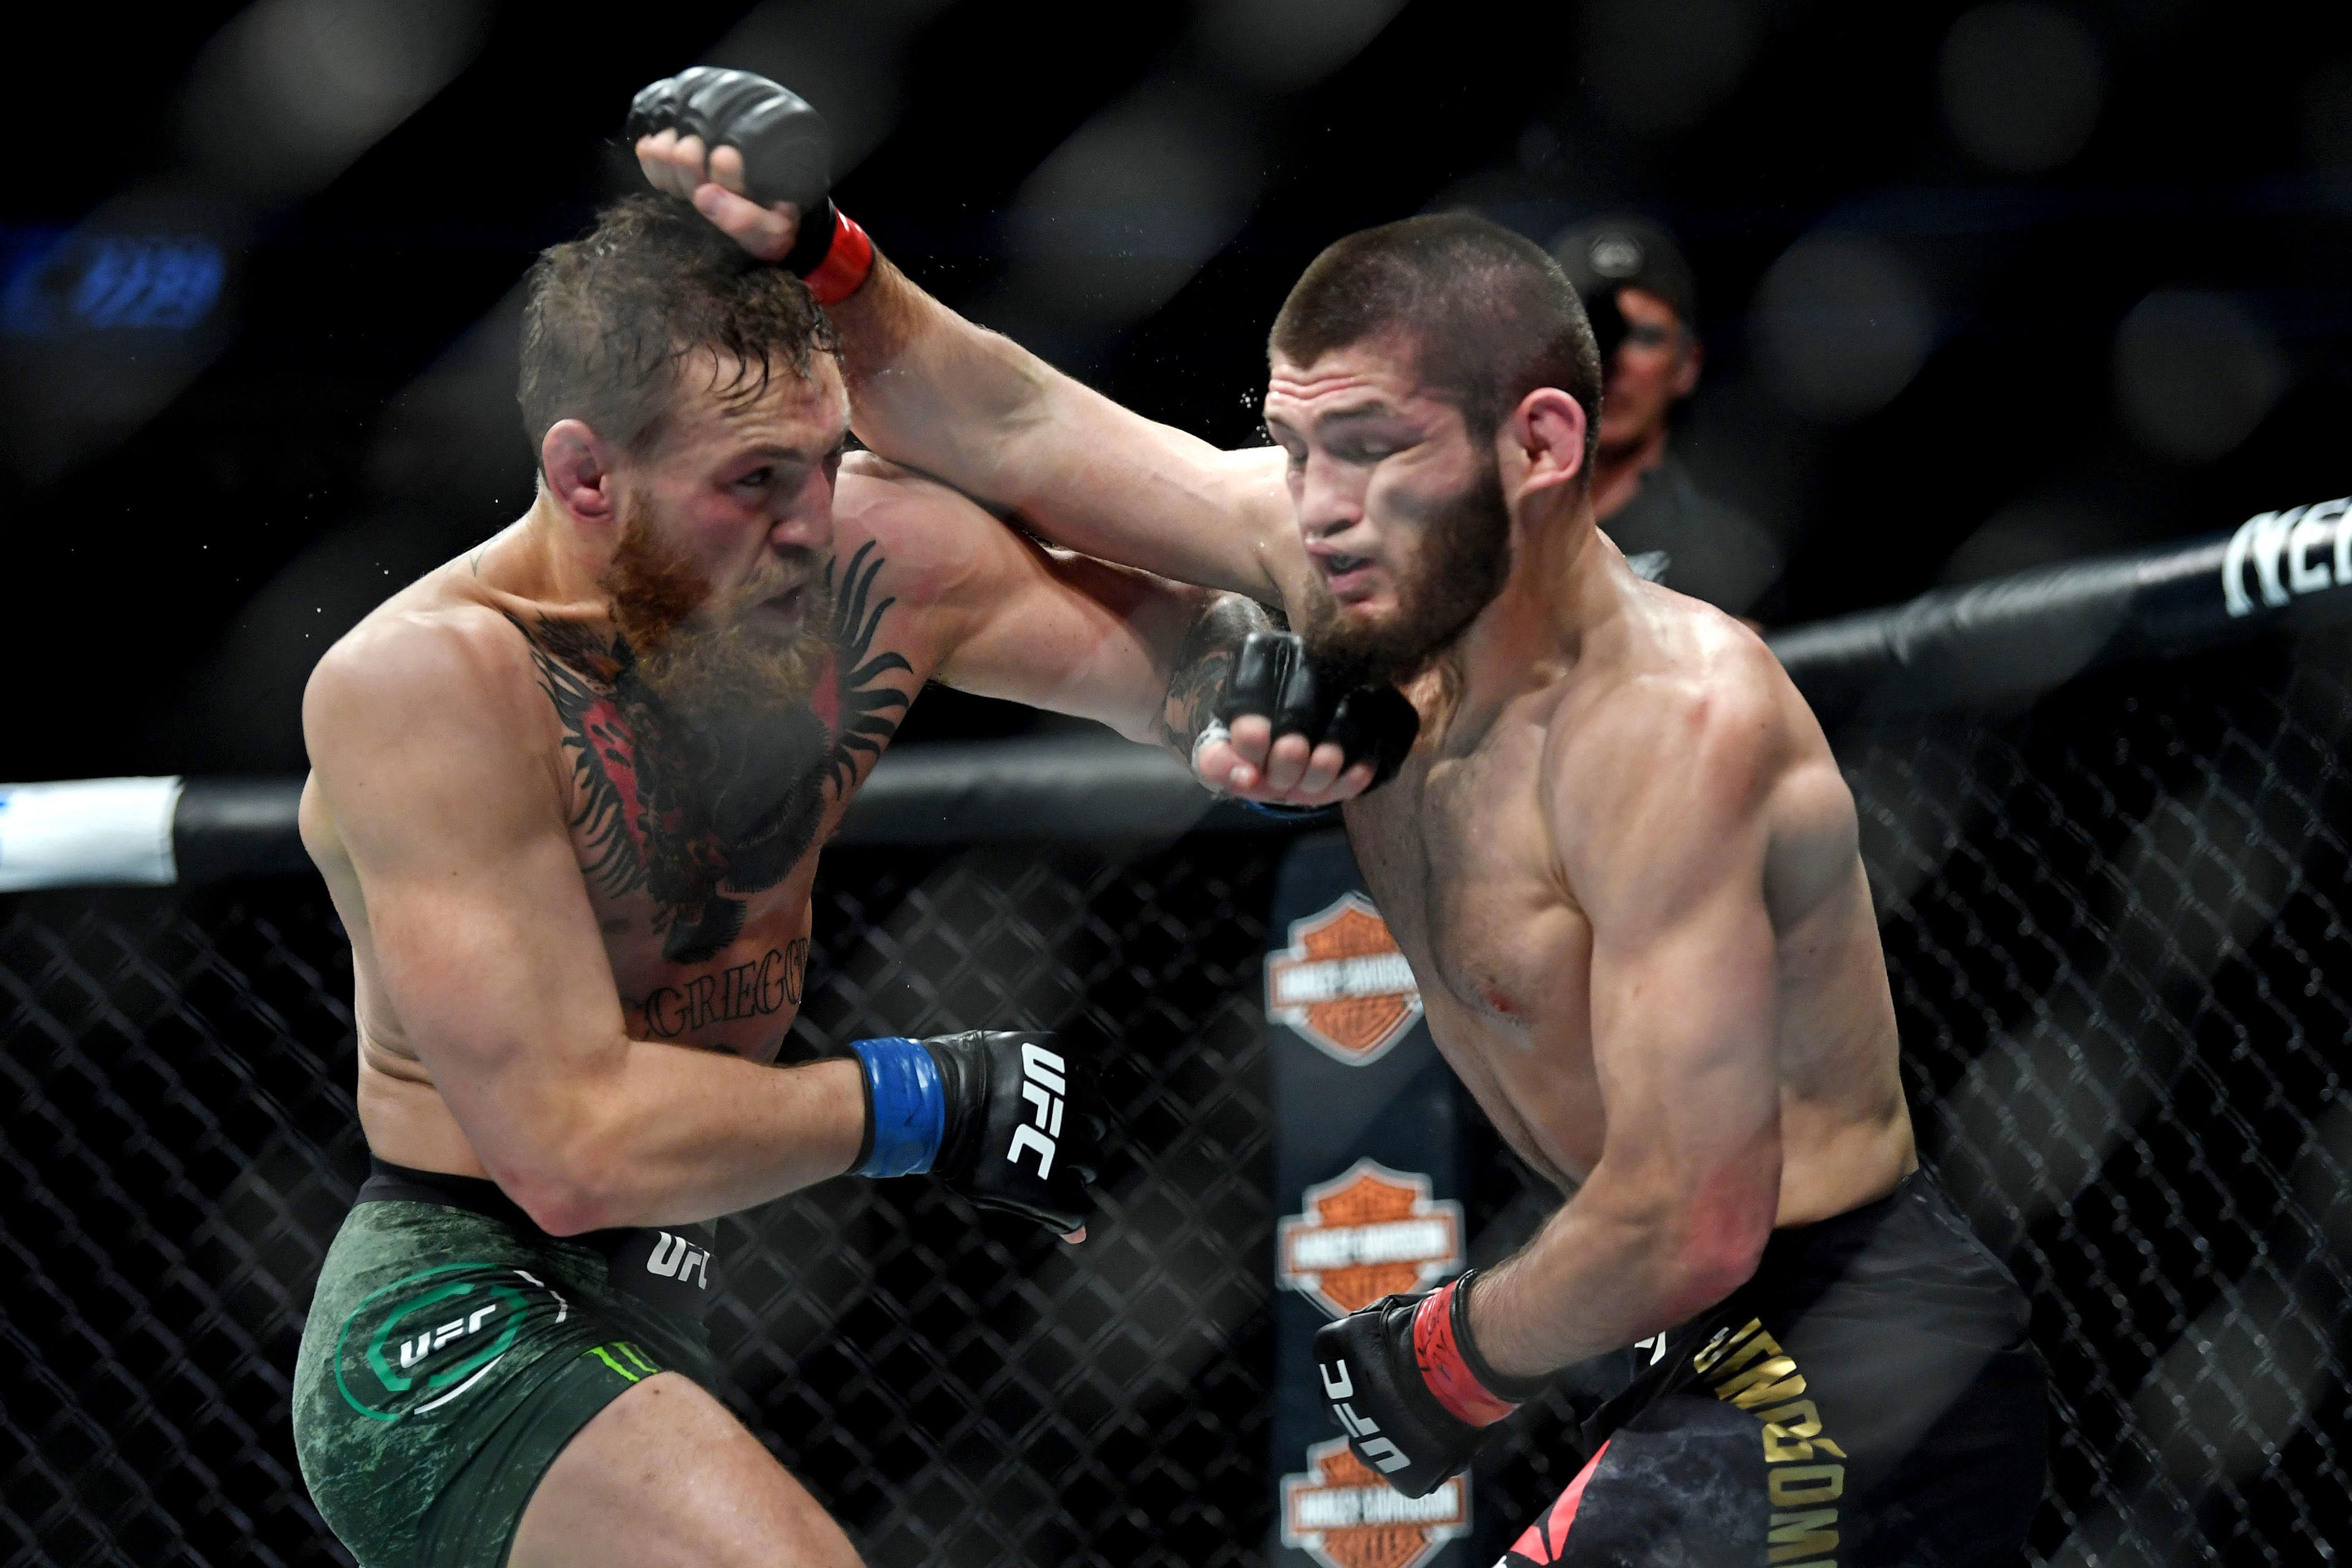 Conor McGregor 'Welcomes Back' Khabib Nurmagomedov To UFC After Controversy